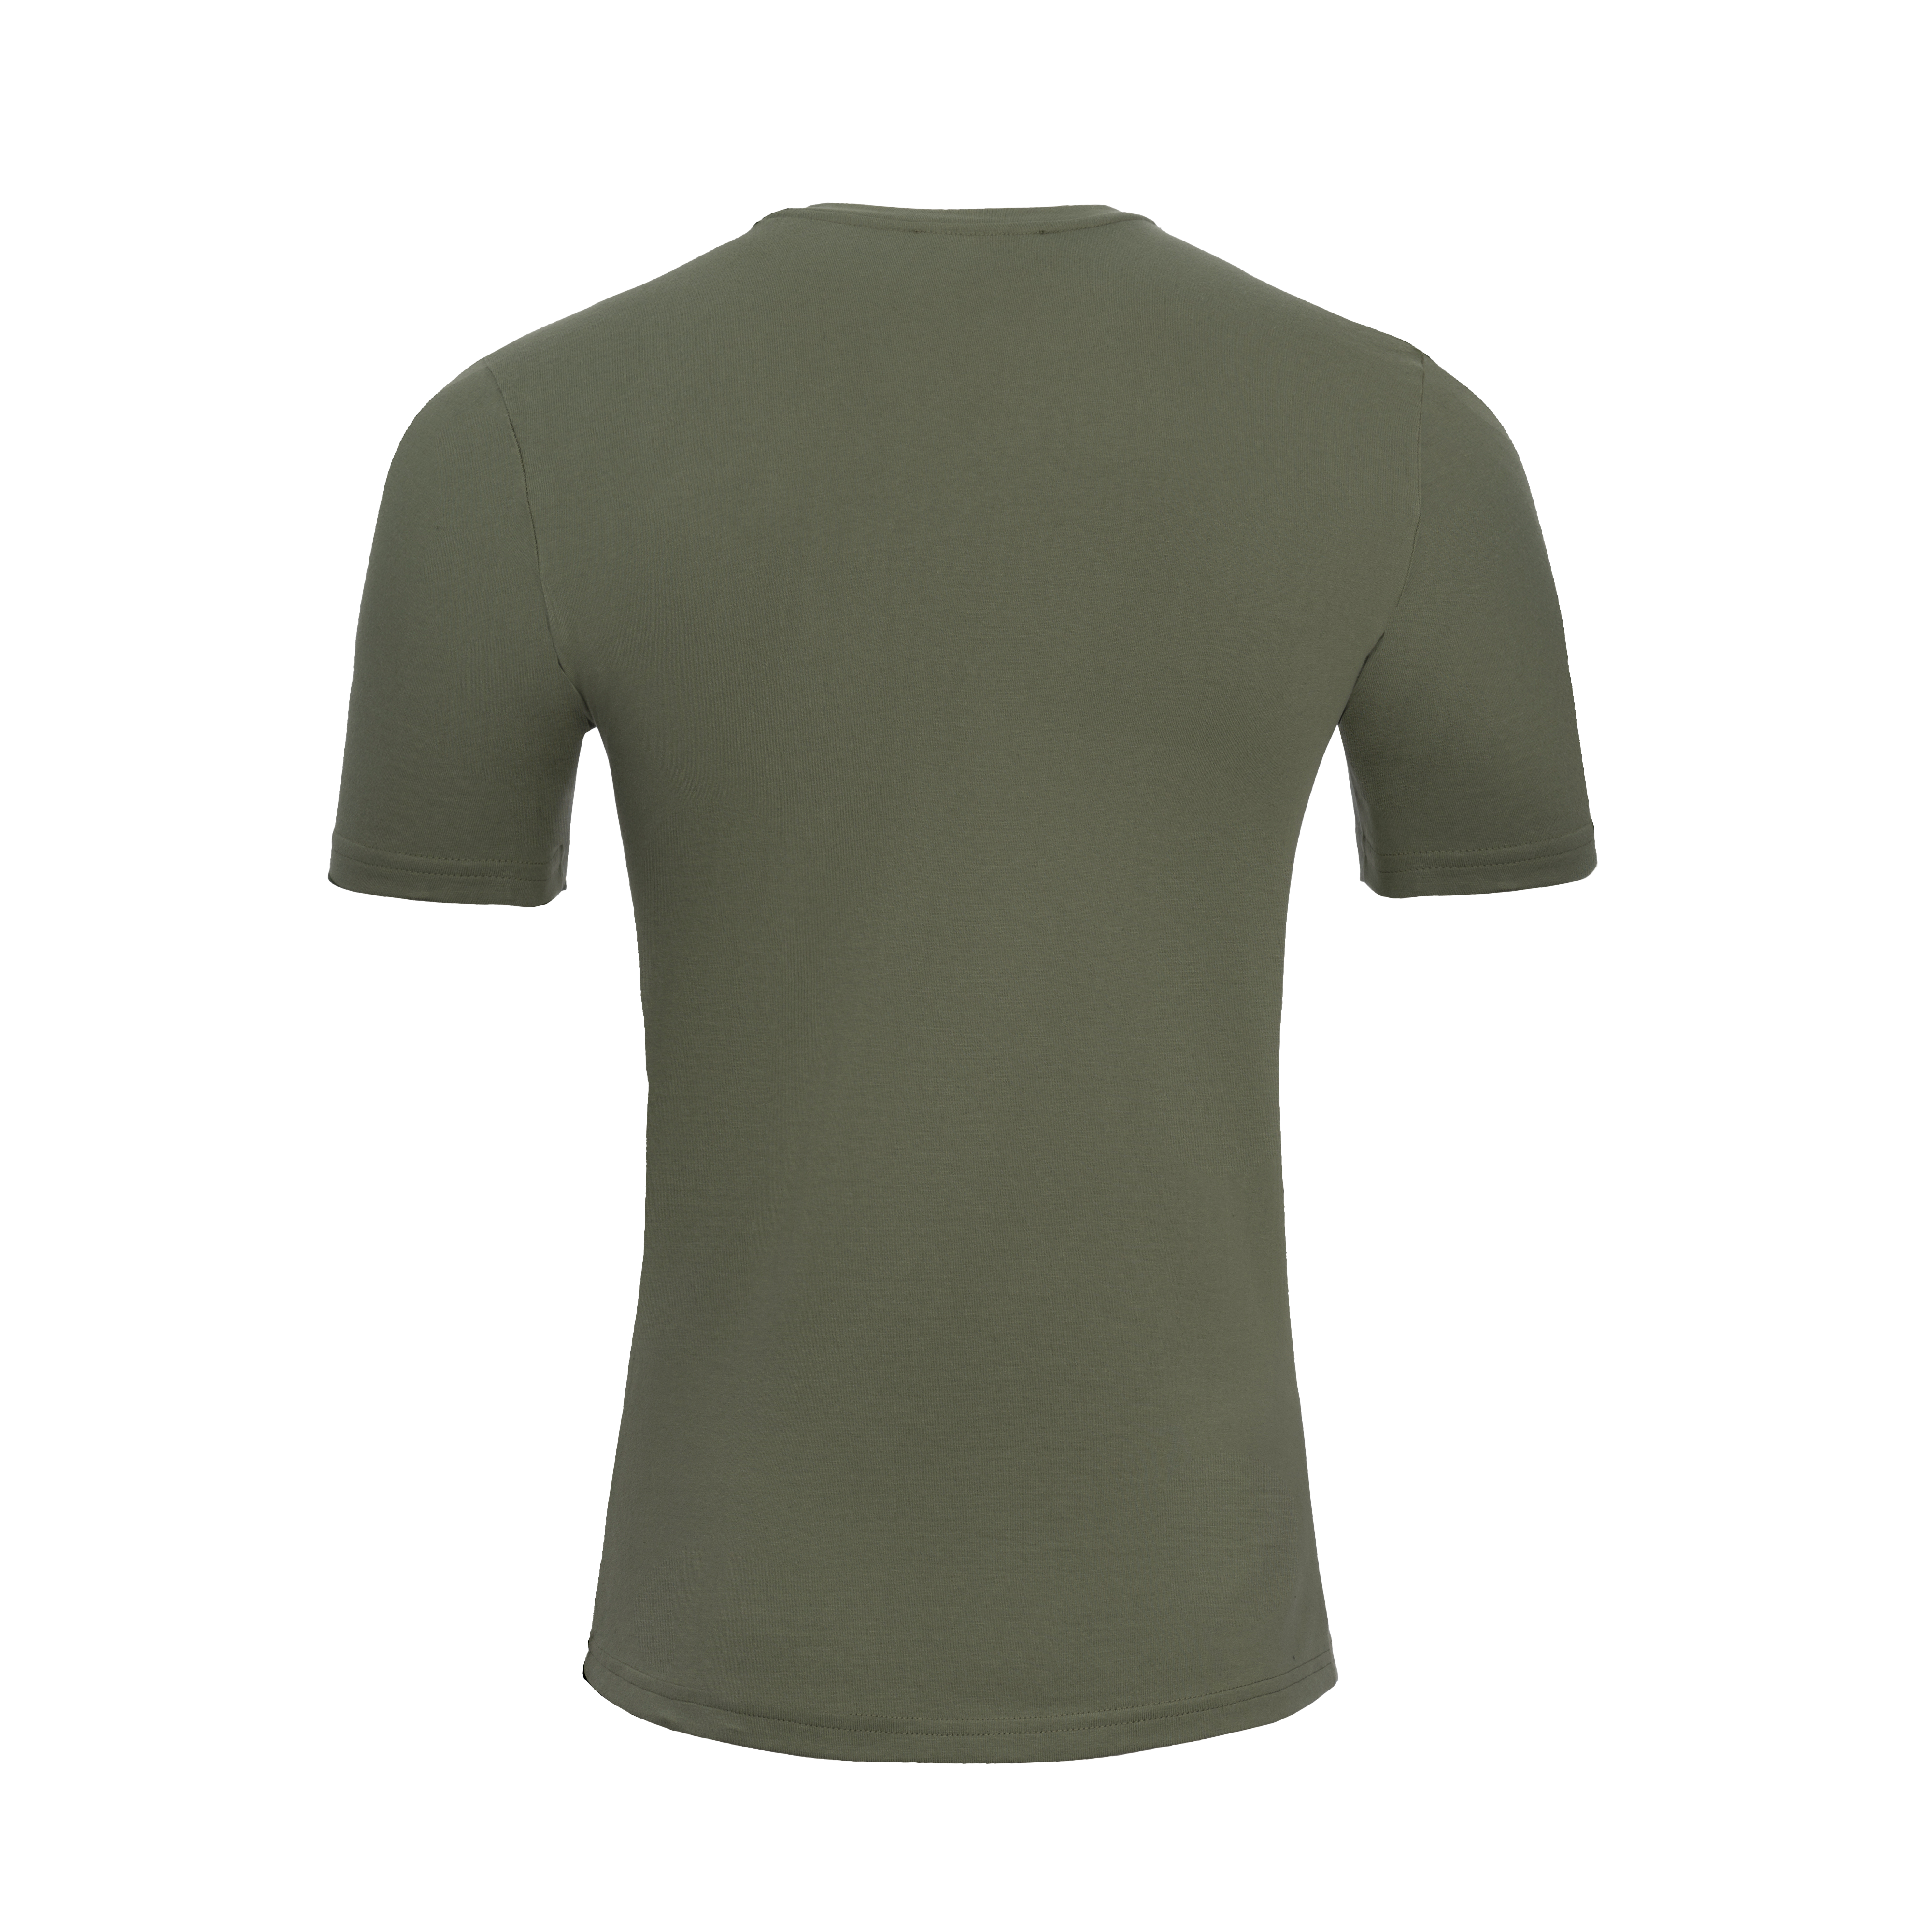 Richy Khaki | T-Shirt Khaki XXL/54